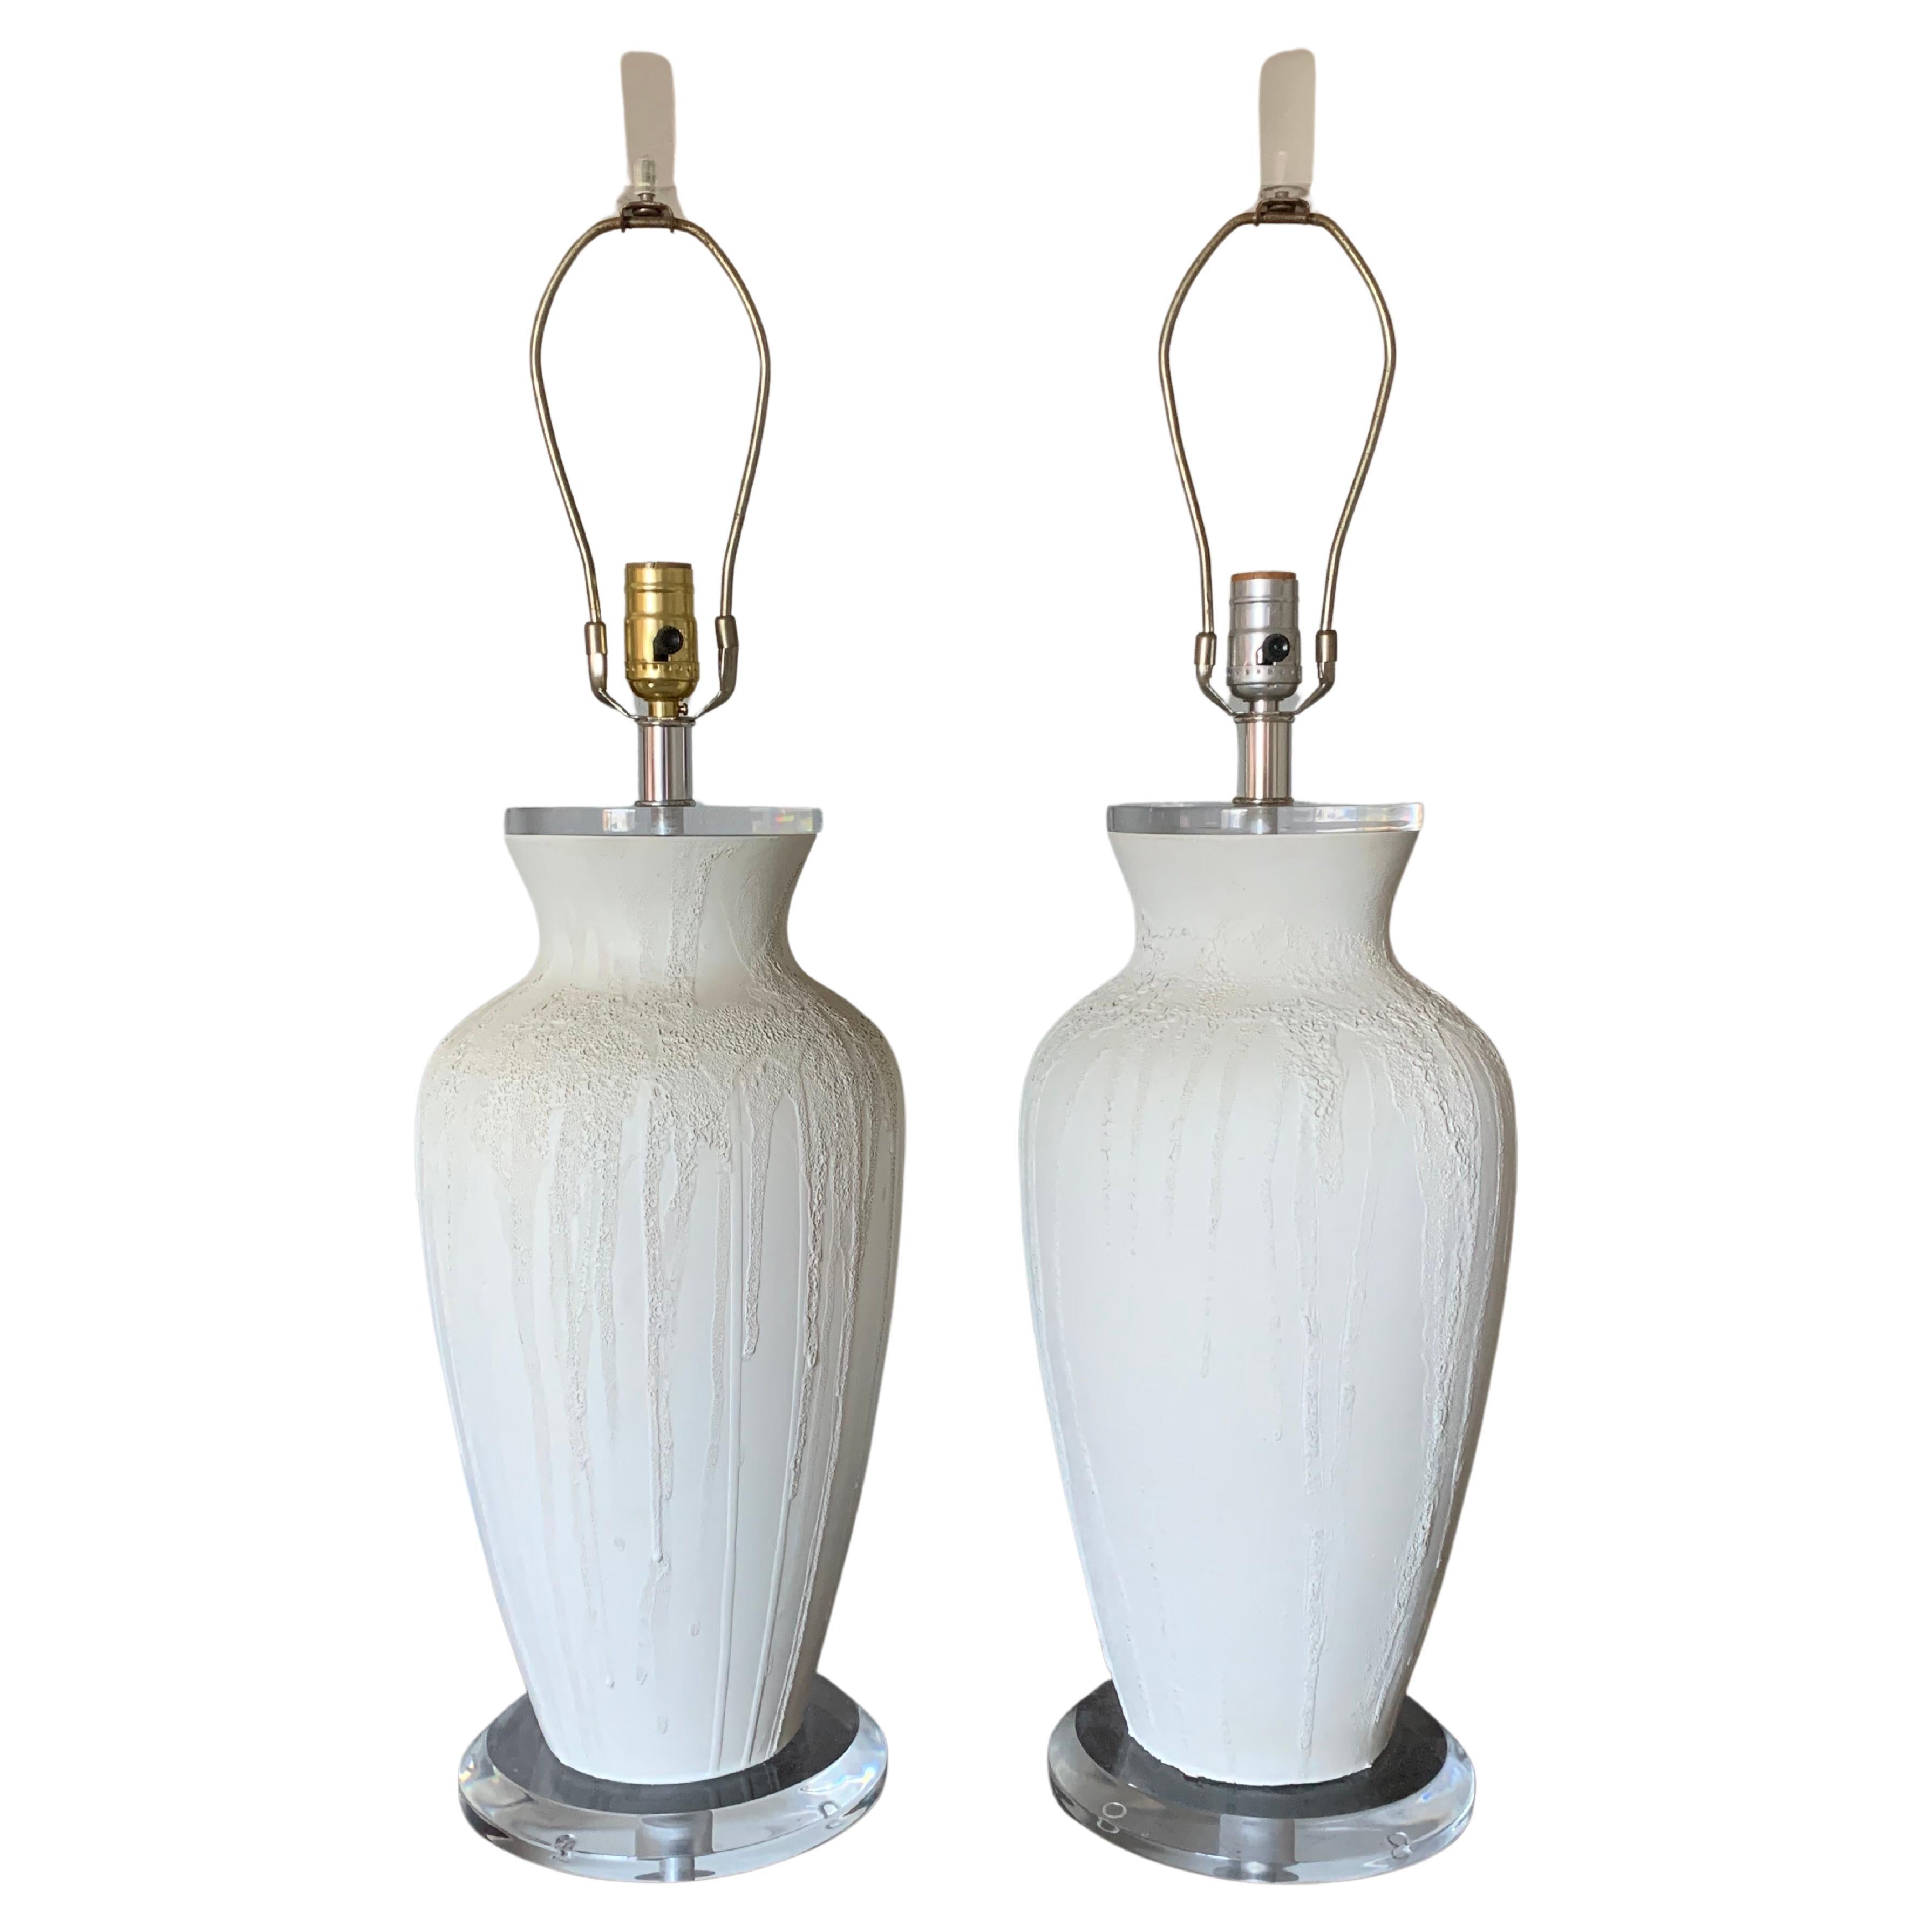 Ein Paar Mid Century Modern Lampen, weiße Keramik mit einer dramatischen Textur, die von oben herabfällt. Die Leuchte steht auf einem Sockel aus Lucit und hat einen Deckel aus gefrostetem Lucit. Ein klares und frisches Aussehen, das sich perfekt in